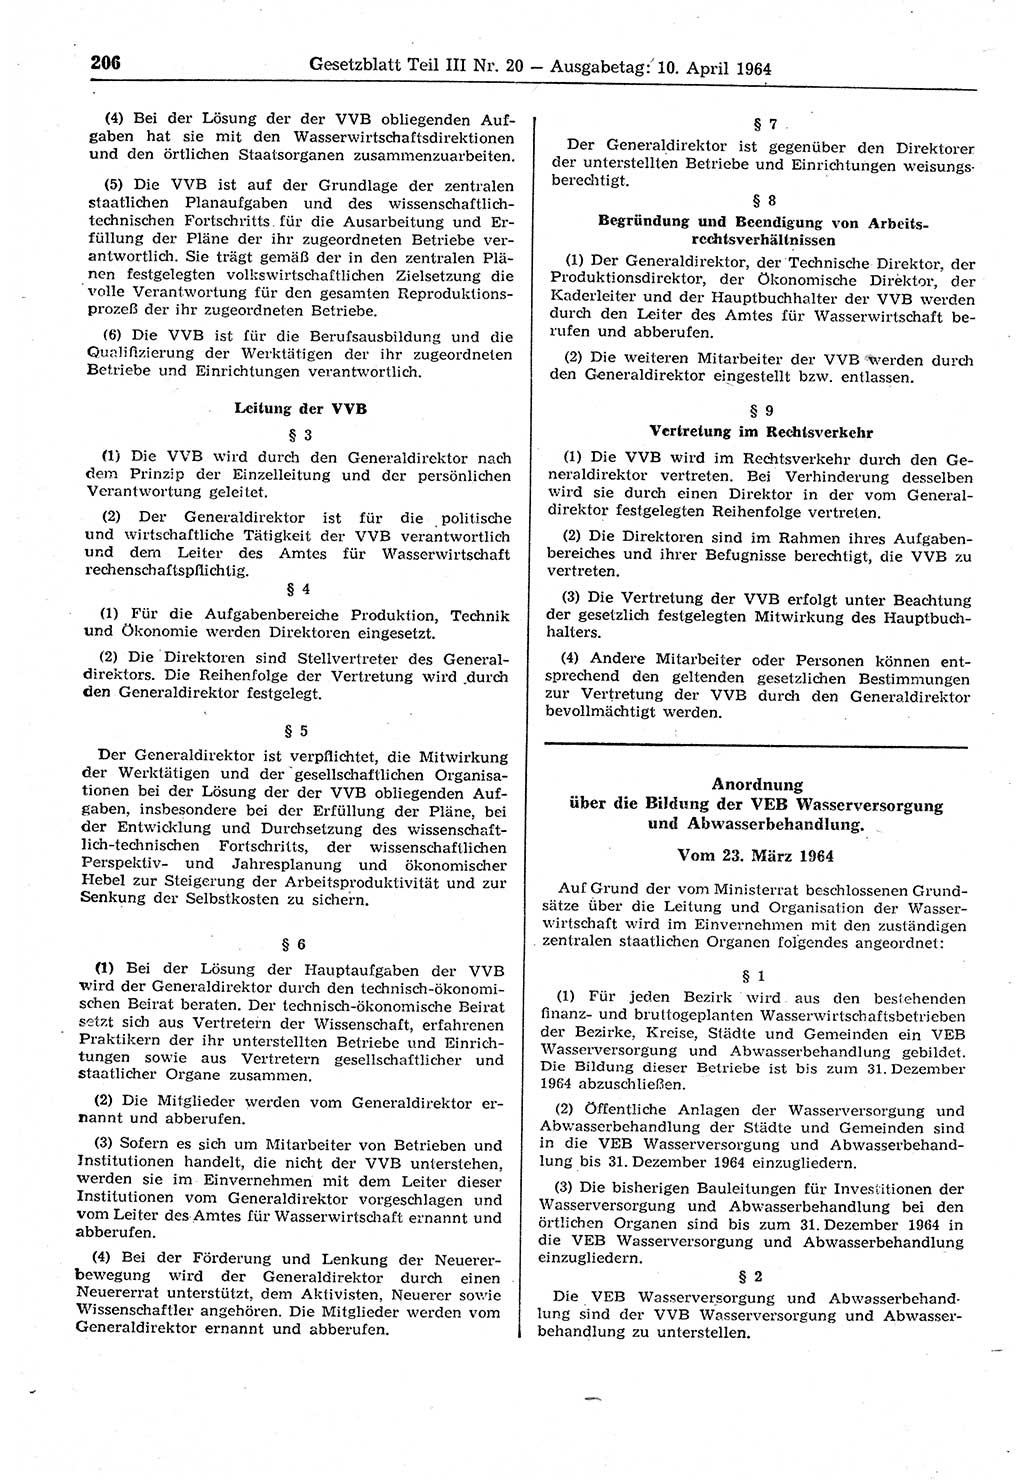 Gesetzblatt (GBl.) der Deutschen Demokratischen Republik (DDR) Teil ⅠⅠⅠ 1964, Seite 206 (GBl. DDR ⅠⅠⅠ 1964, S. 206)